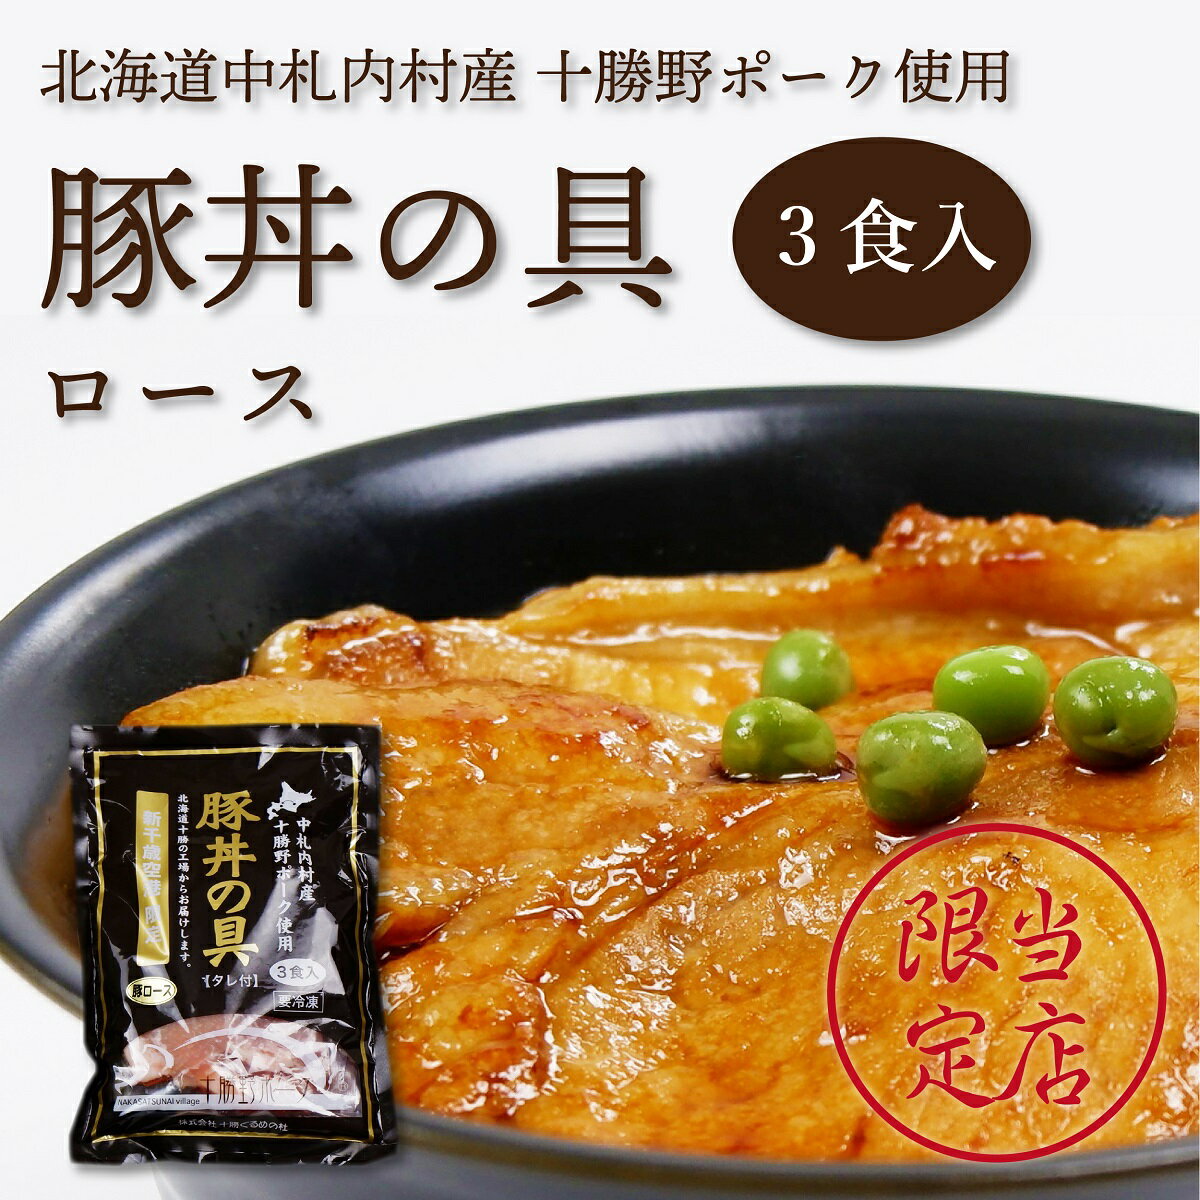 十勝ぐるめの杜 豚丼の具 ロース 3食入 北海道 お土産 ギフト 豚丼 十勝 帯広